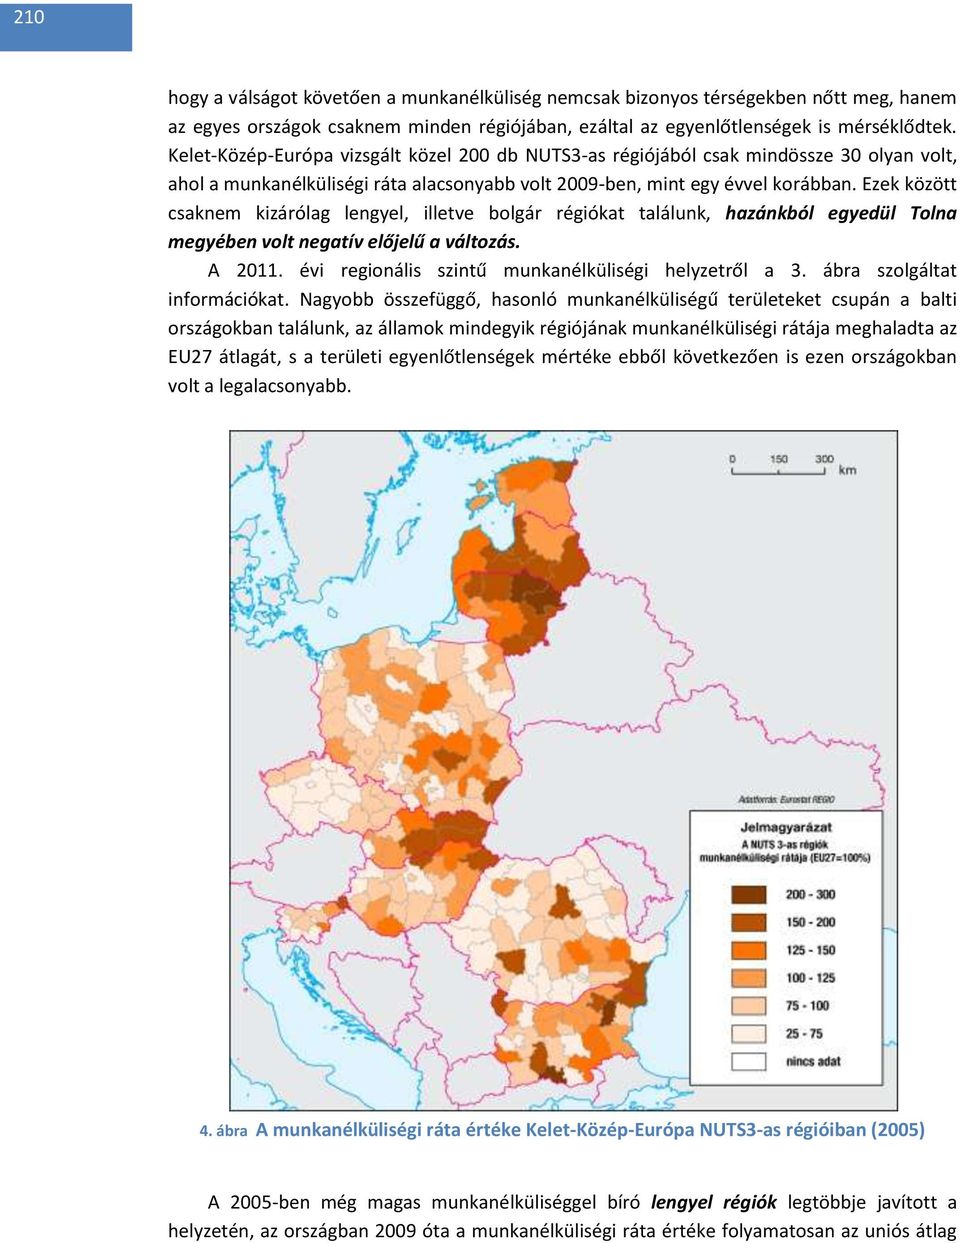 Ezek között csaknem kizárólag lengyel, illetve bolgár régiókat találunk, hazánkból egyedül Tolna megyében volt negatív előjelű a változás. A 2011.